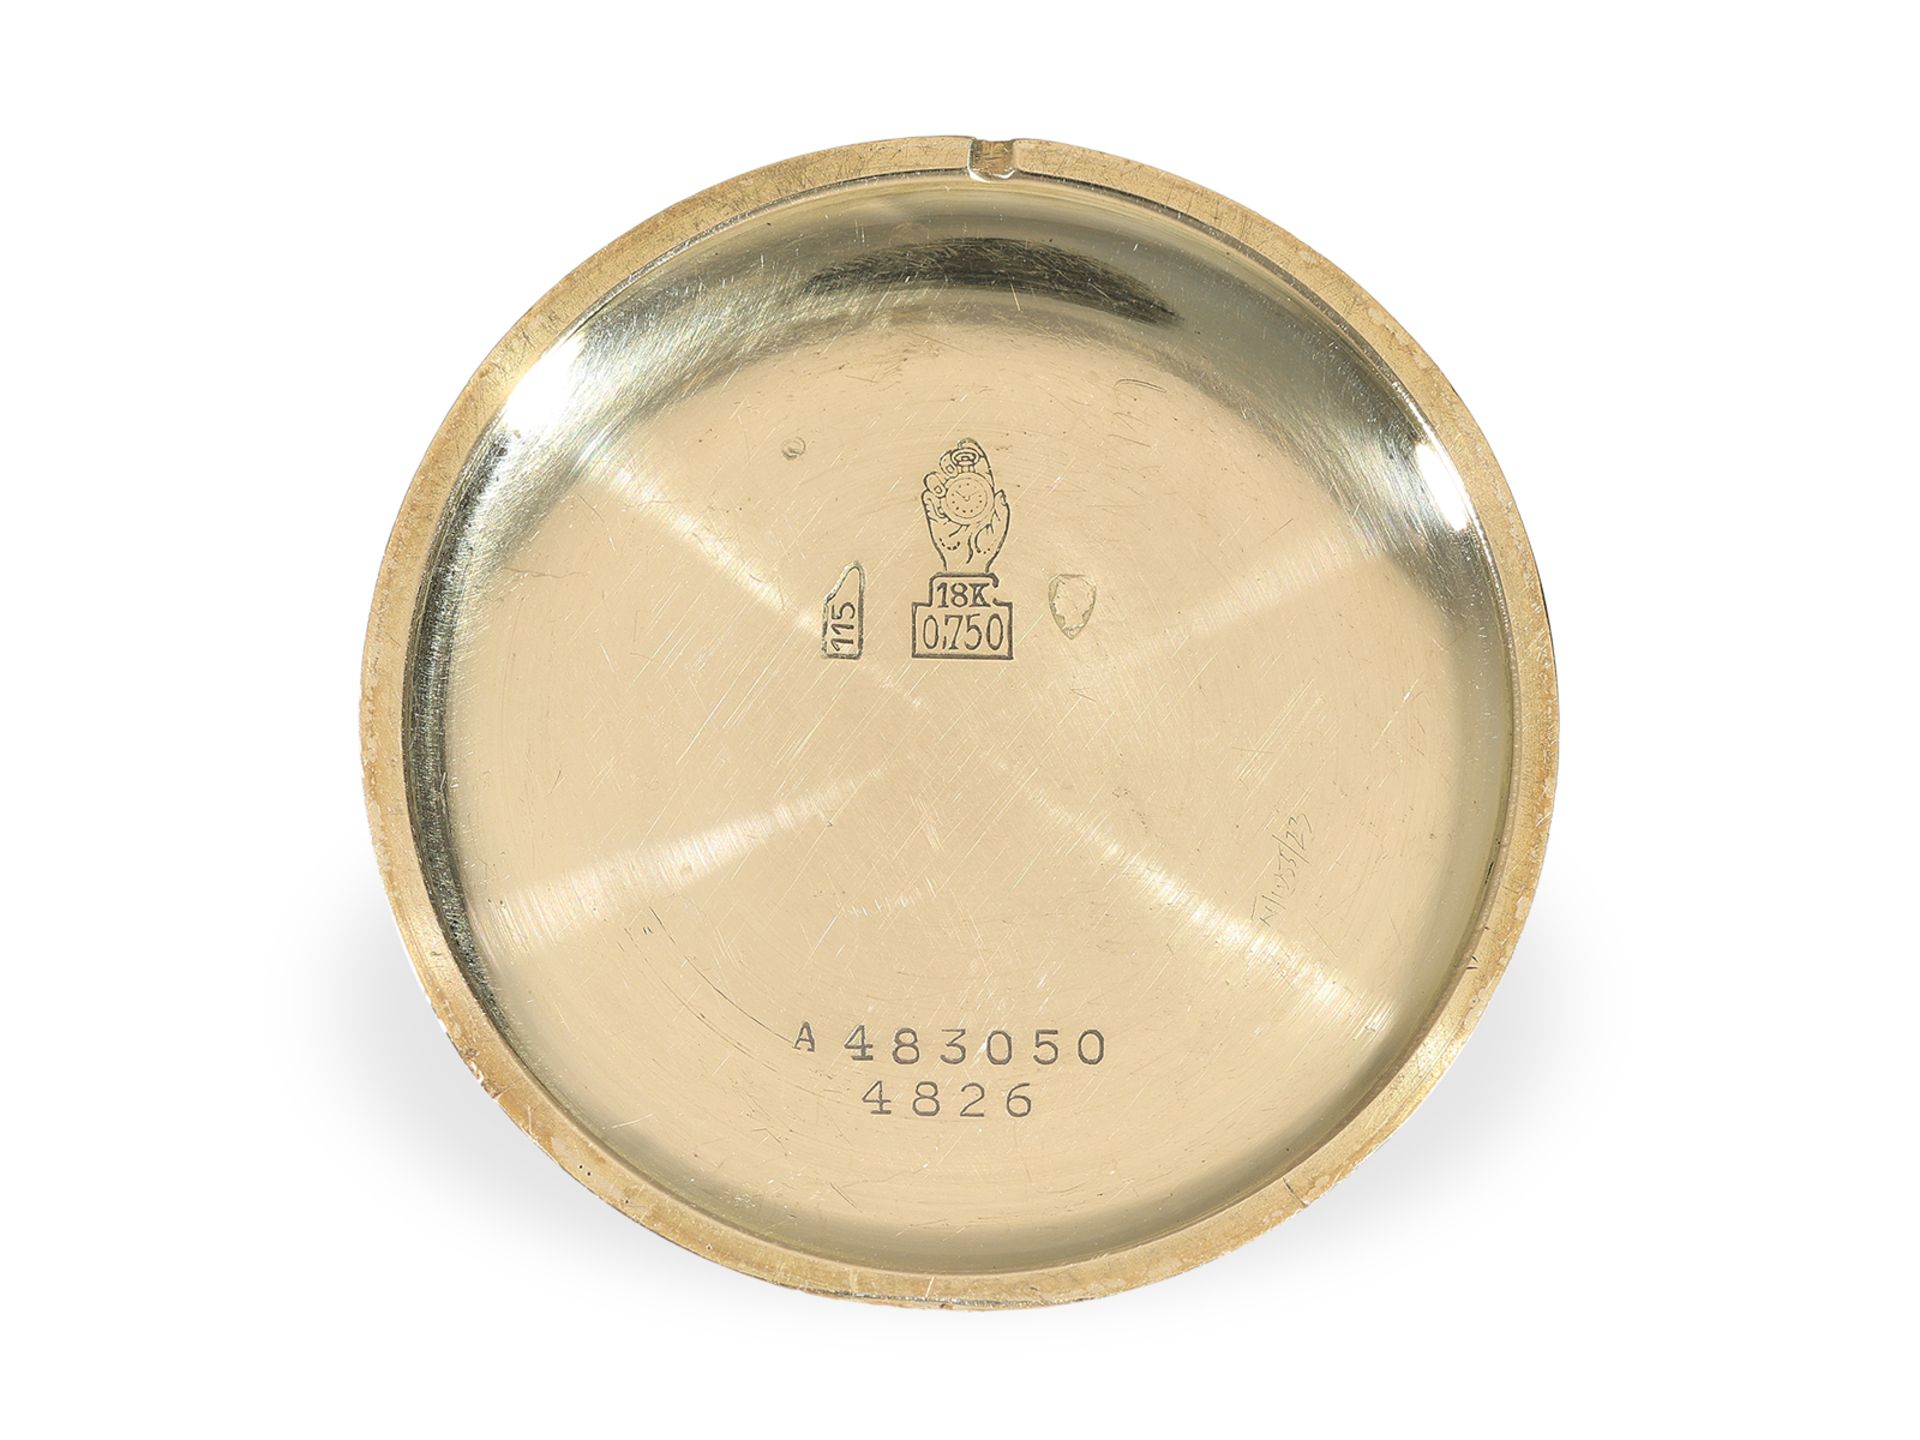 Armbanduhr: sehr schön erhaltene, große 18K Gold Movado "Triple Date" Ref. 4826, ca. 1950 - Bild 3 aus 4